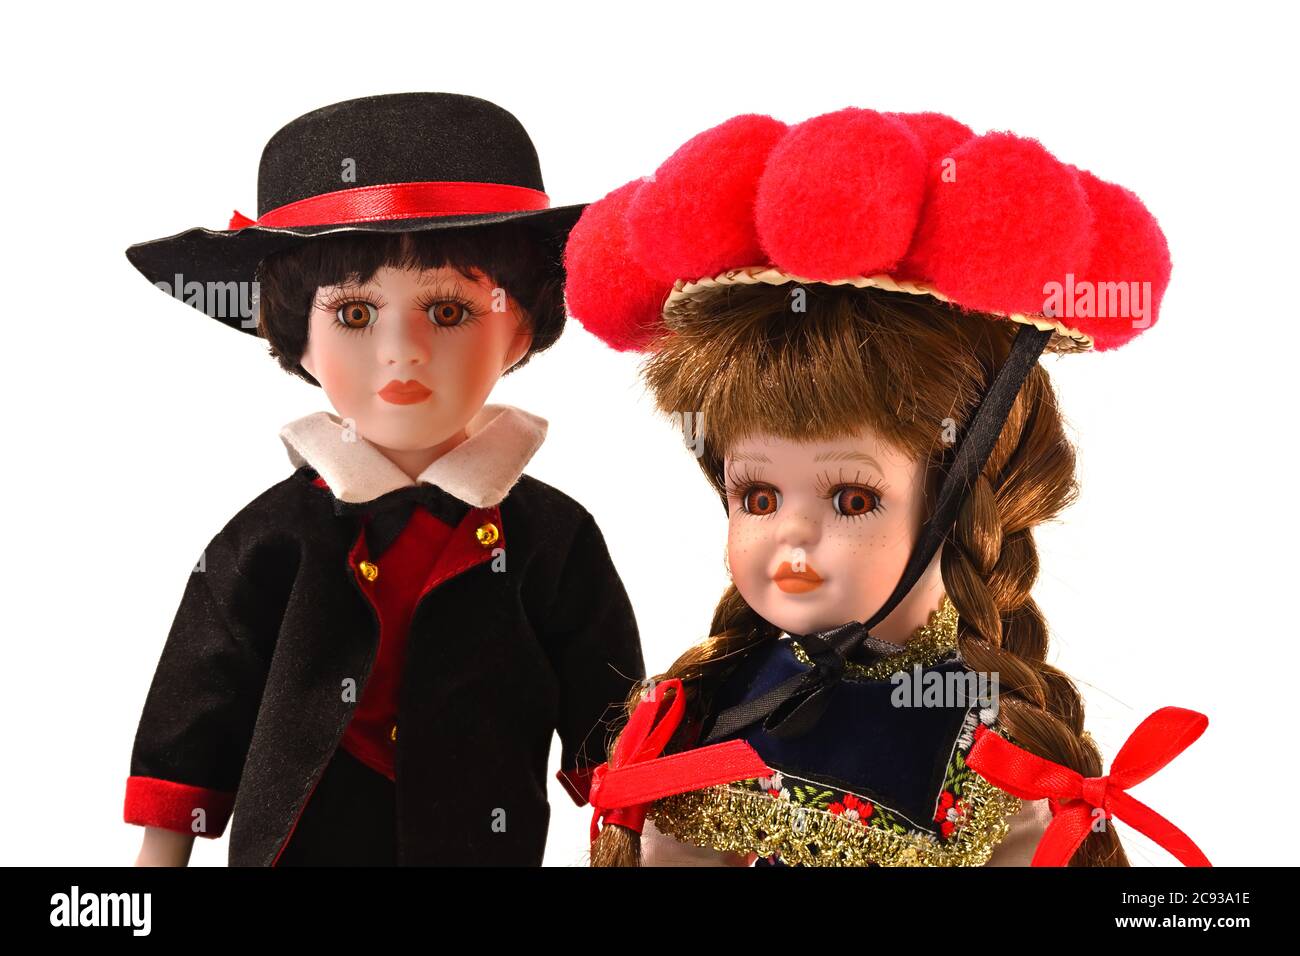 Typisches Souvenir aus Deutschland. Schwarzwälder Puppen in Tracht mit rotem Bollenhut, einem traditionellen Kopfschmuck. Stockfoto